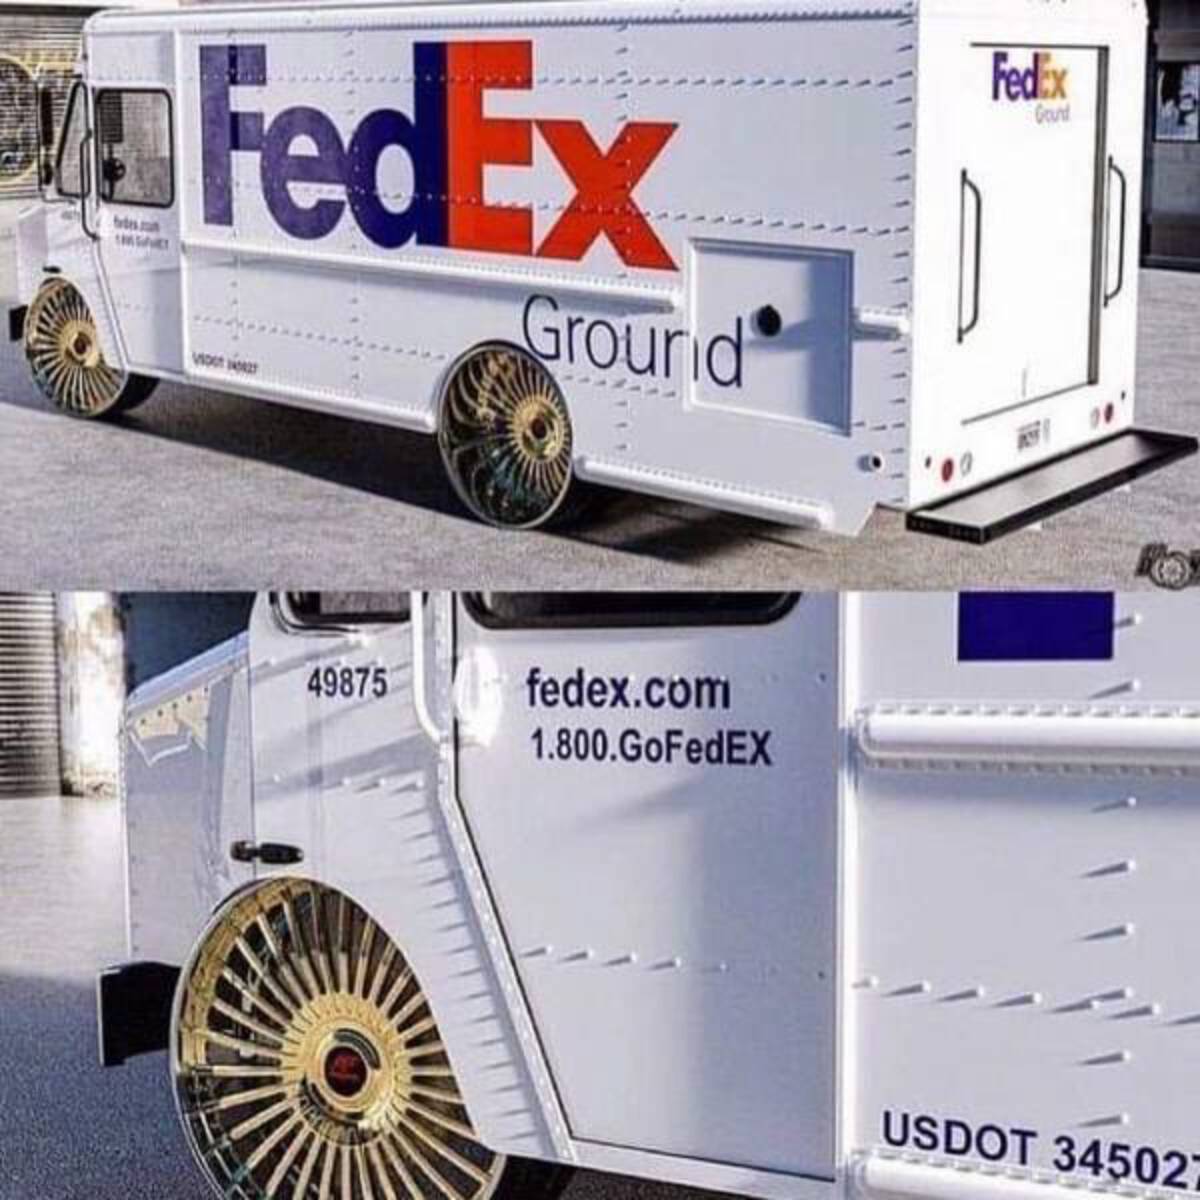 vehicle - b FedEx Voot No 49875 Grourid fedex.com 1.800.GoFedEX FedEx Gound Usdot 345027